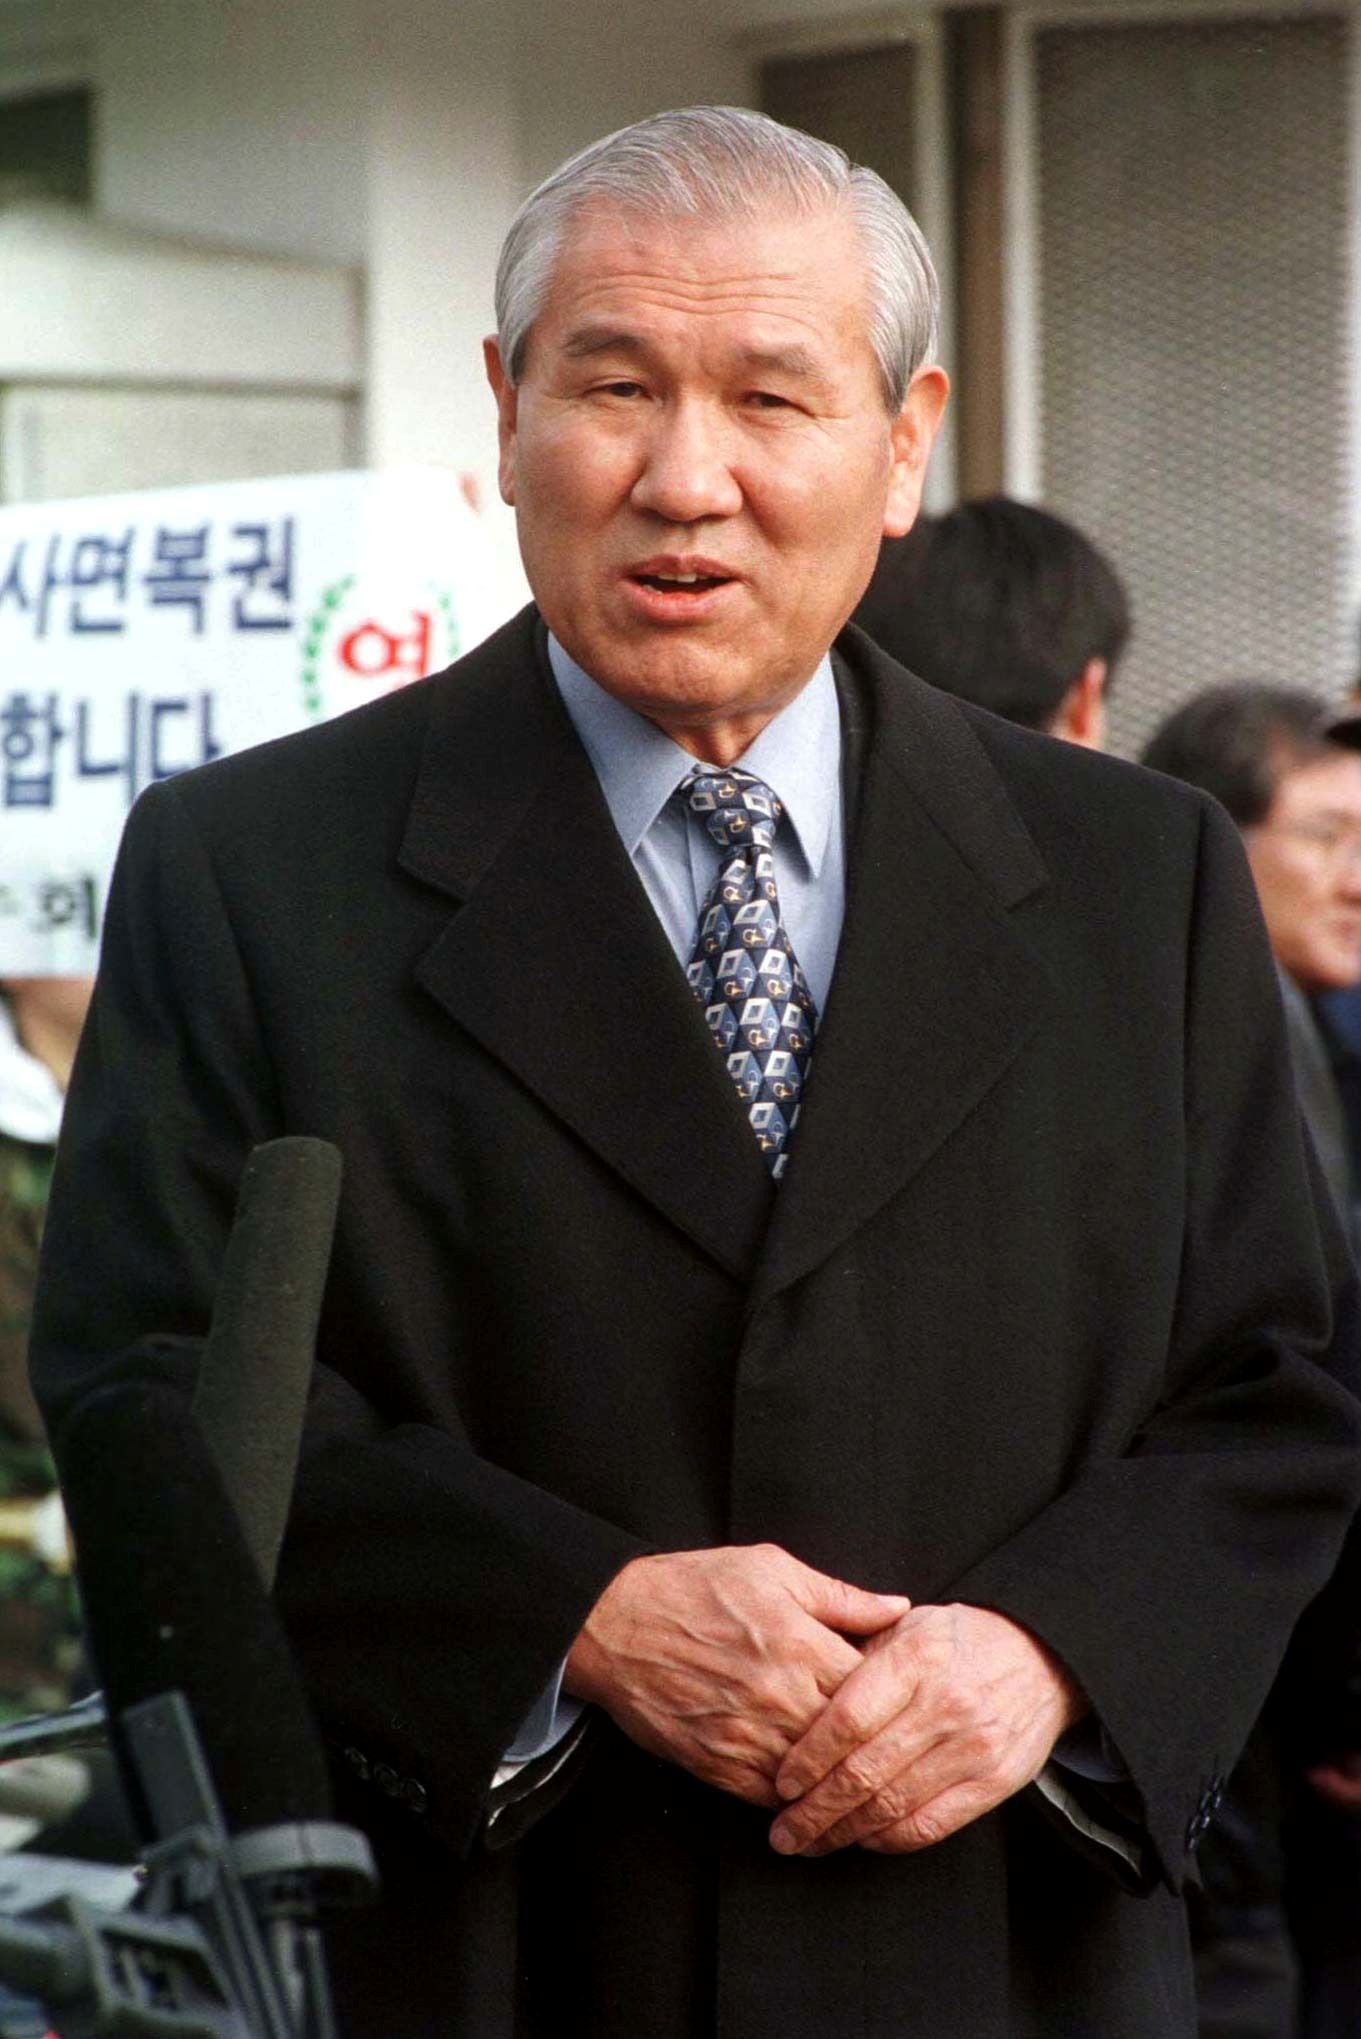 FOTO DE ARCHIVO: El ex presidente de Corea del Sur, Roh Tae-woo, habla con la prensa en la puerta de la Casa de Detención de Seúl en Seúl el 22 de diciembre de 1997, poco después de haber sido liberado de cumplir una sentencia de prisión. REUTERS / Stringer / Foto de archivo